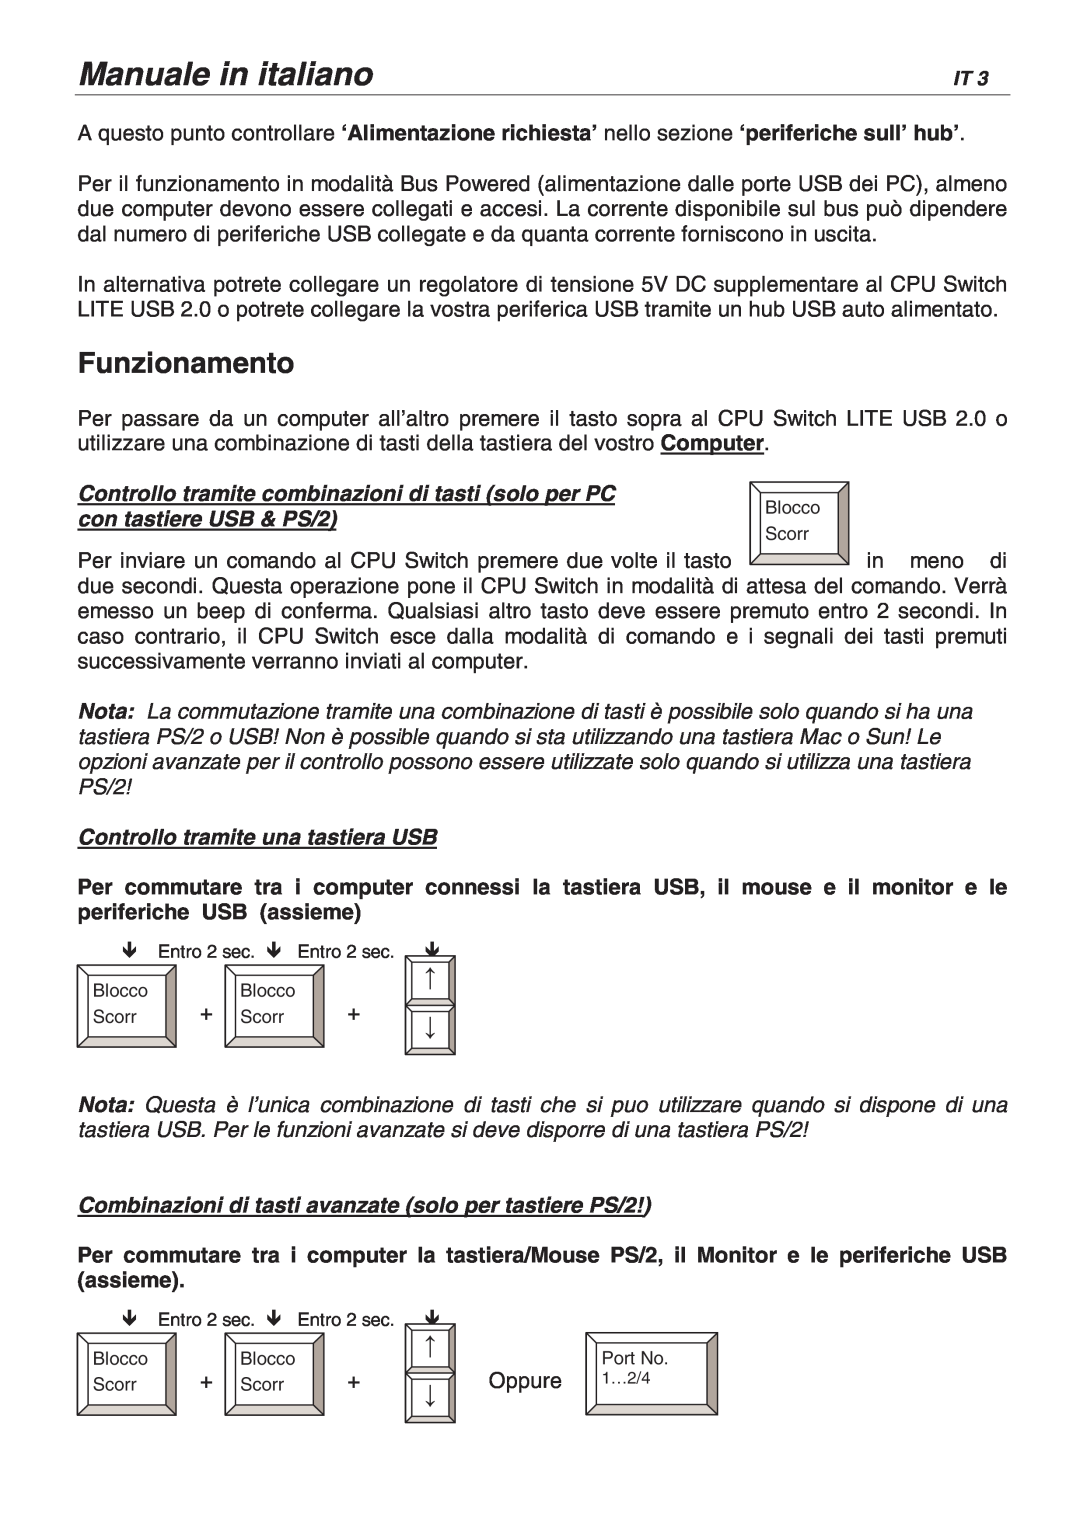 Lindy 32825, 32856 user manual Manuale in italiano, Funzionamento, Controllo tramite combinazioni di tasti solo per PC 